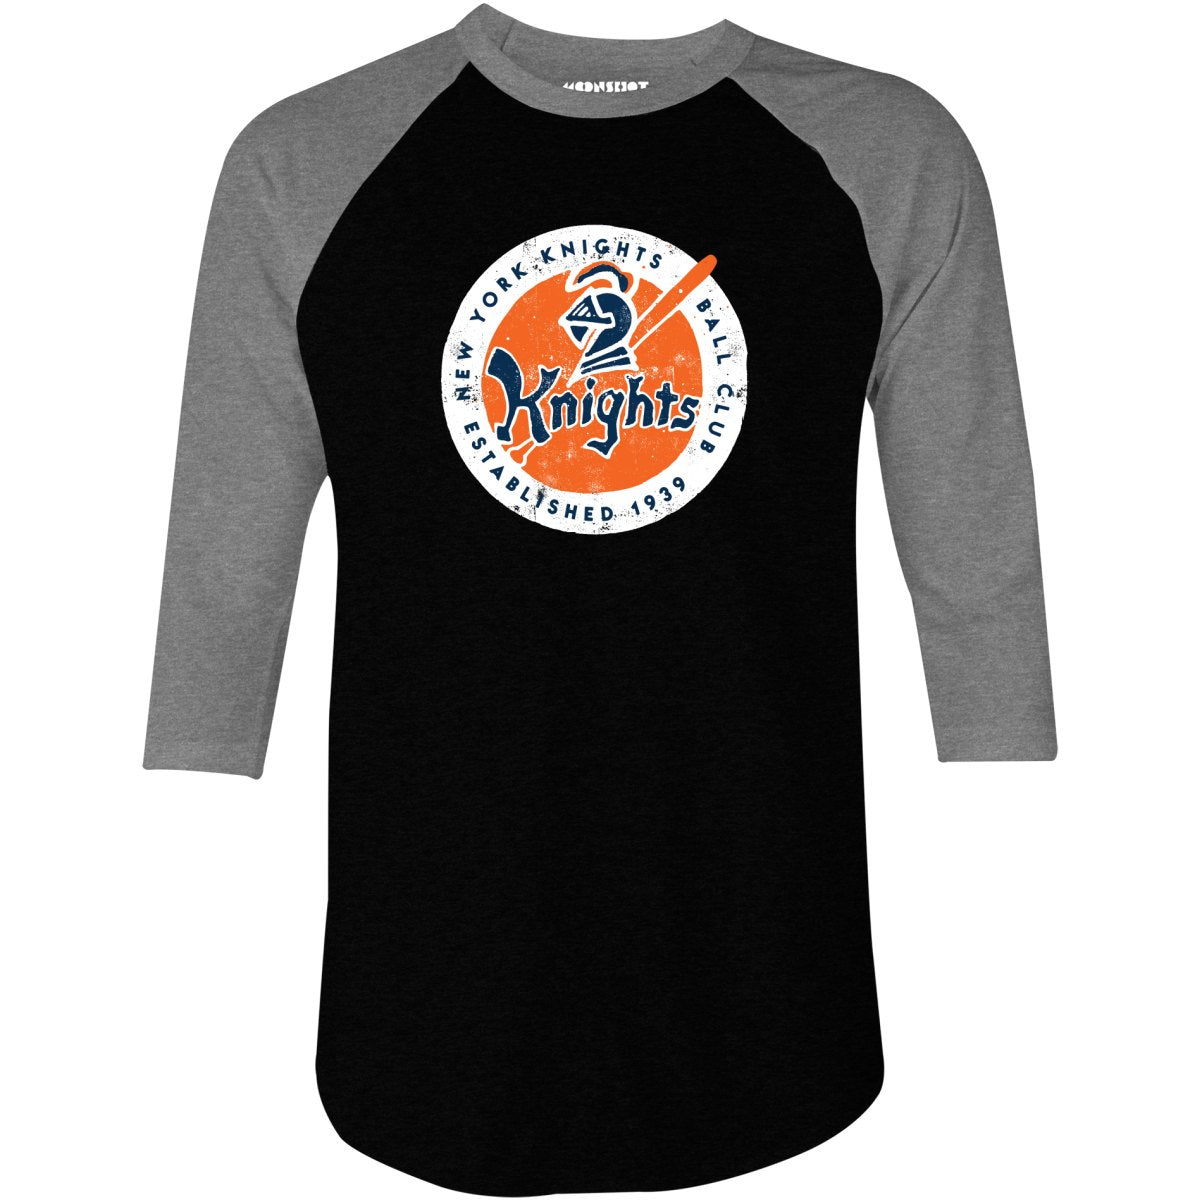 New York Knights Ball Club Patch - 3/4 Sleeve Raglan T-Shirt